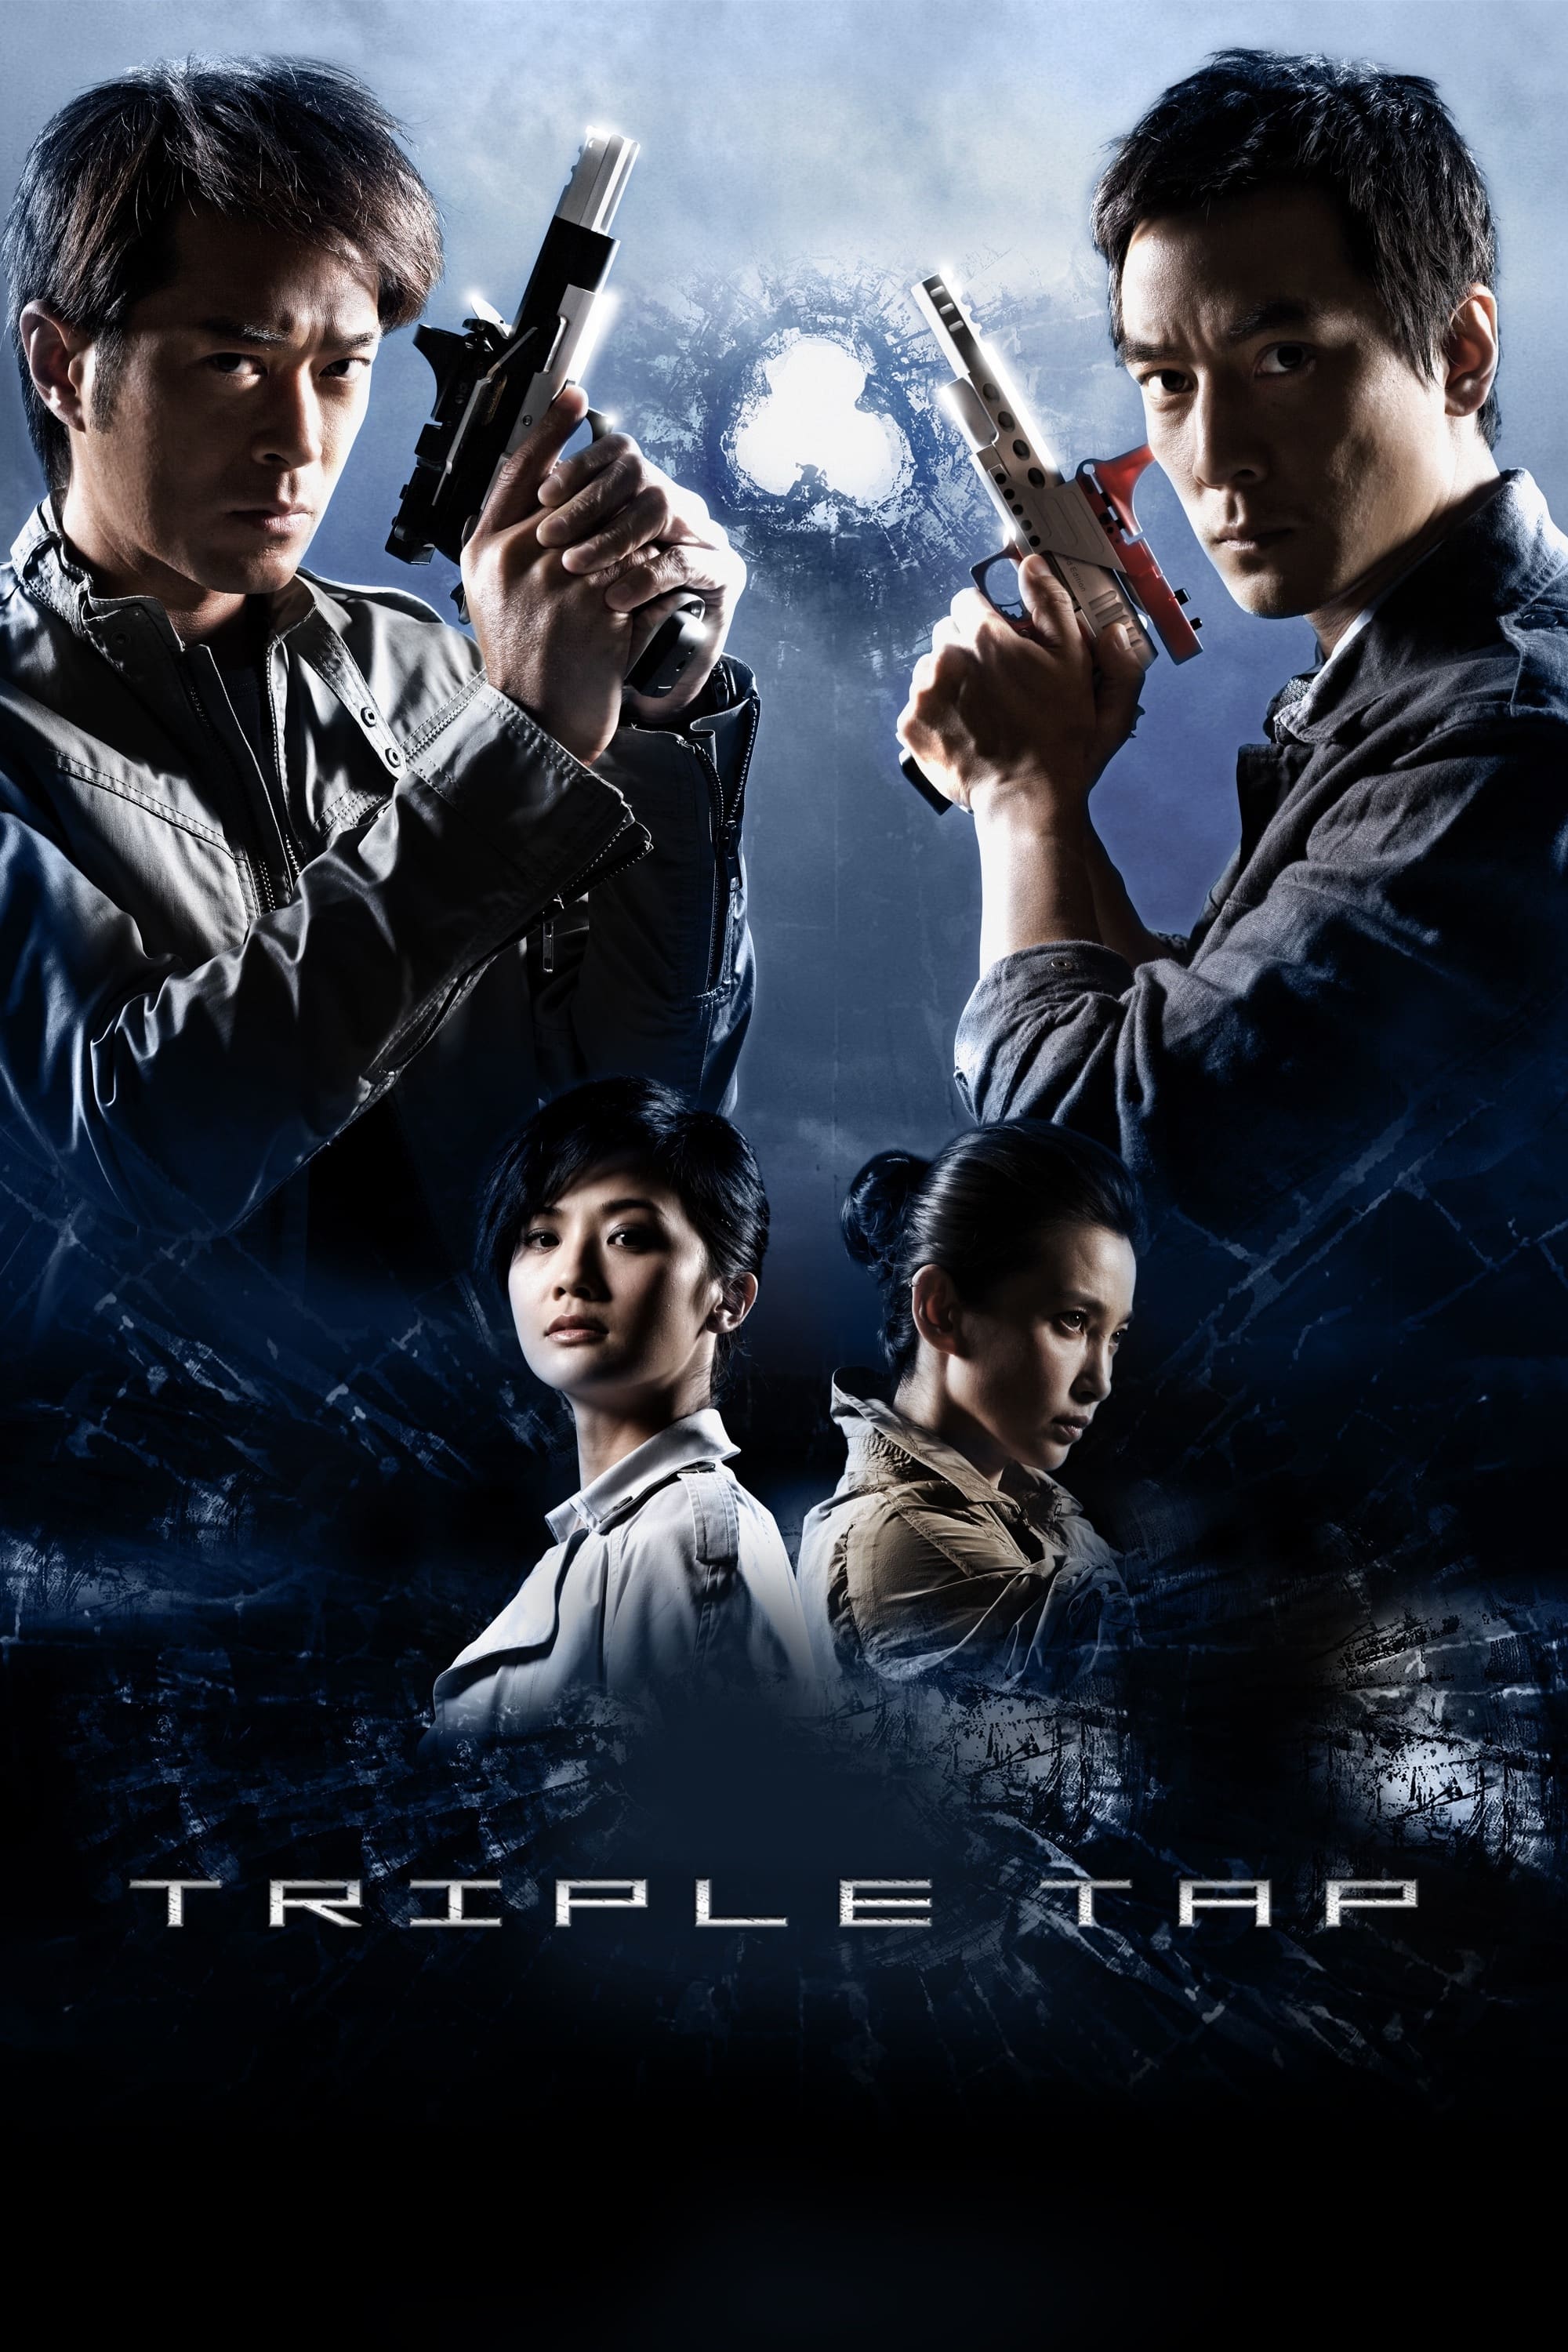 Triple Tap (2010)